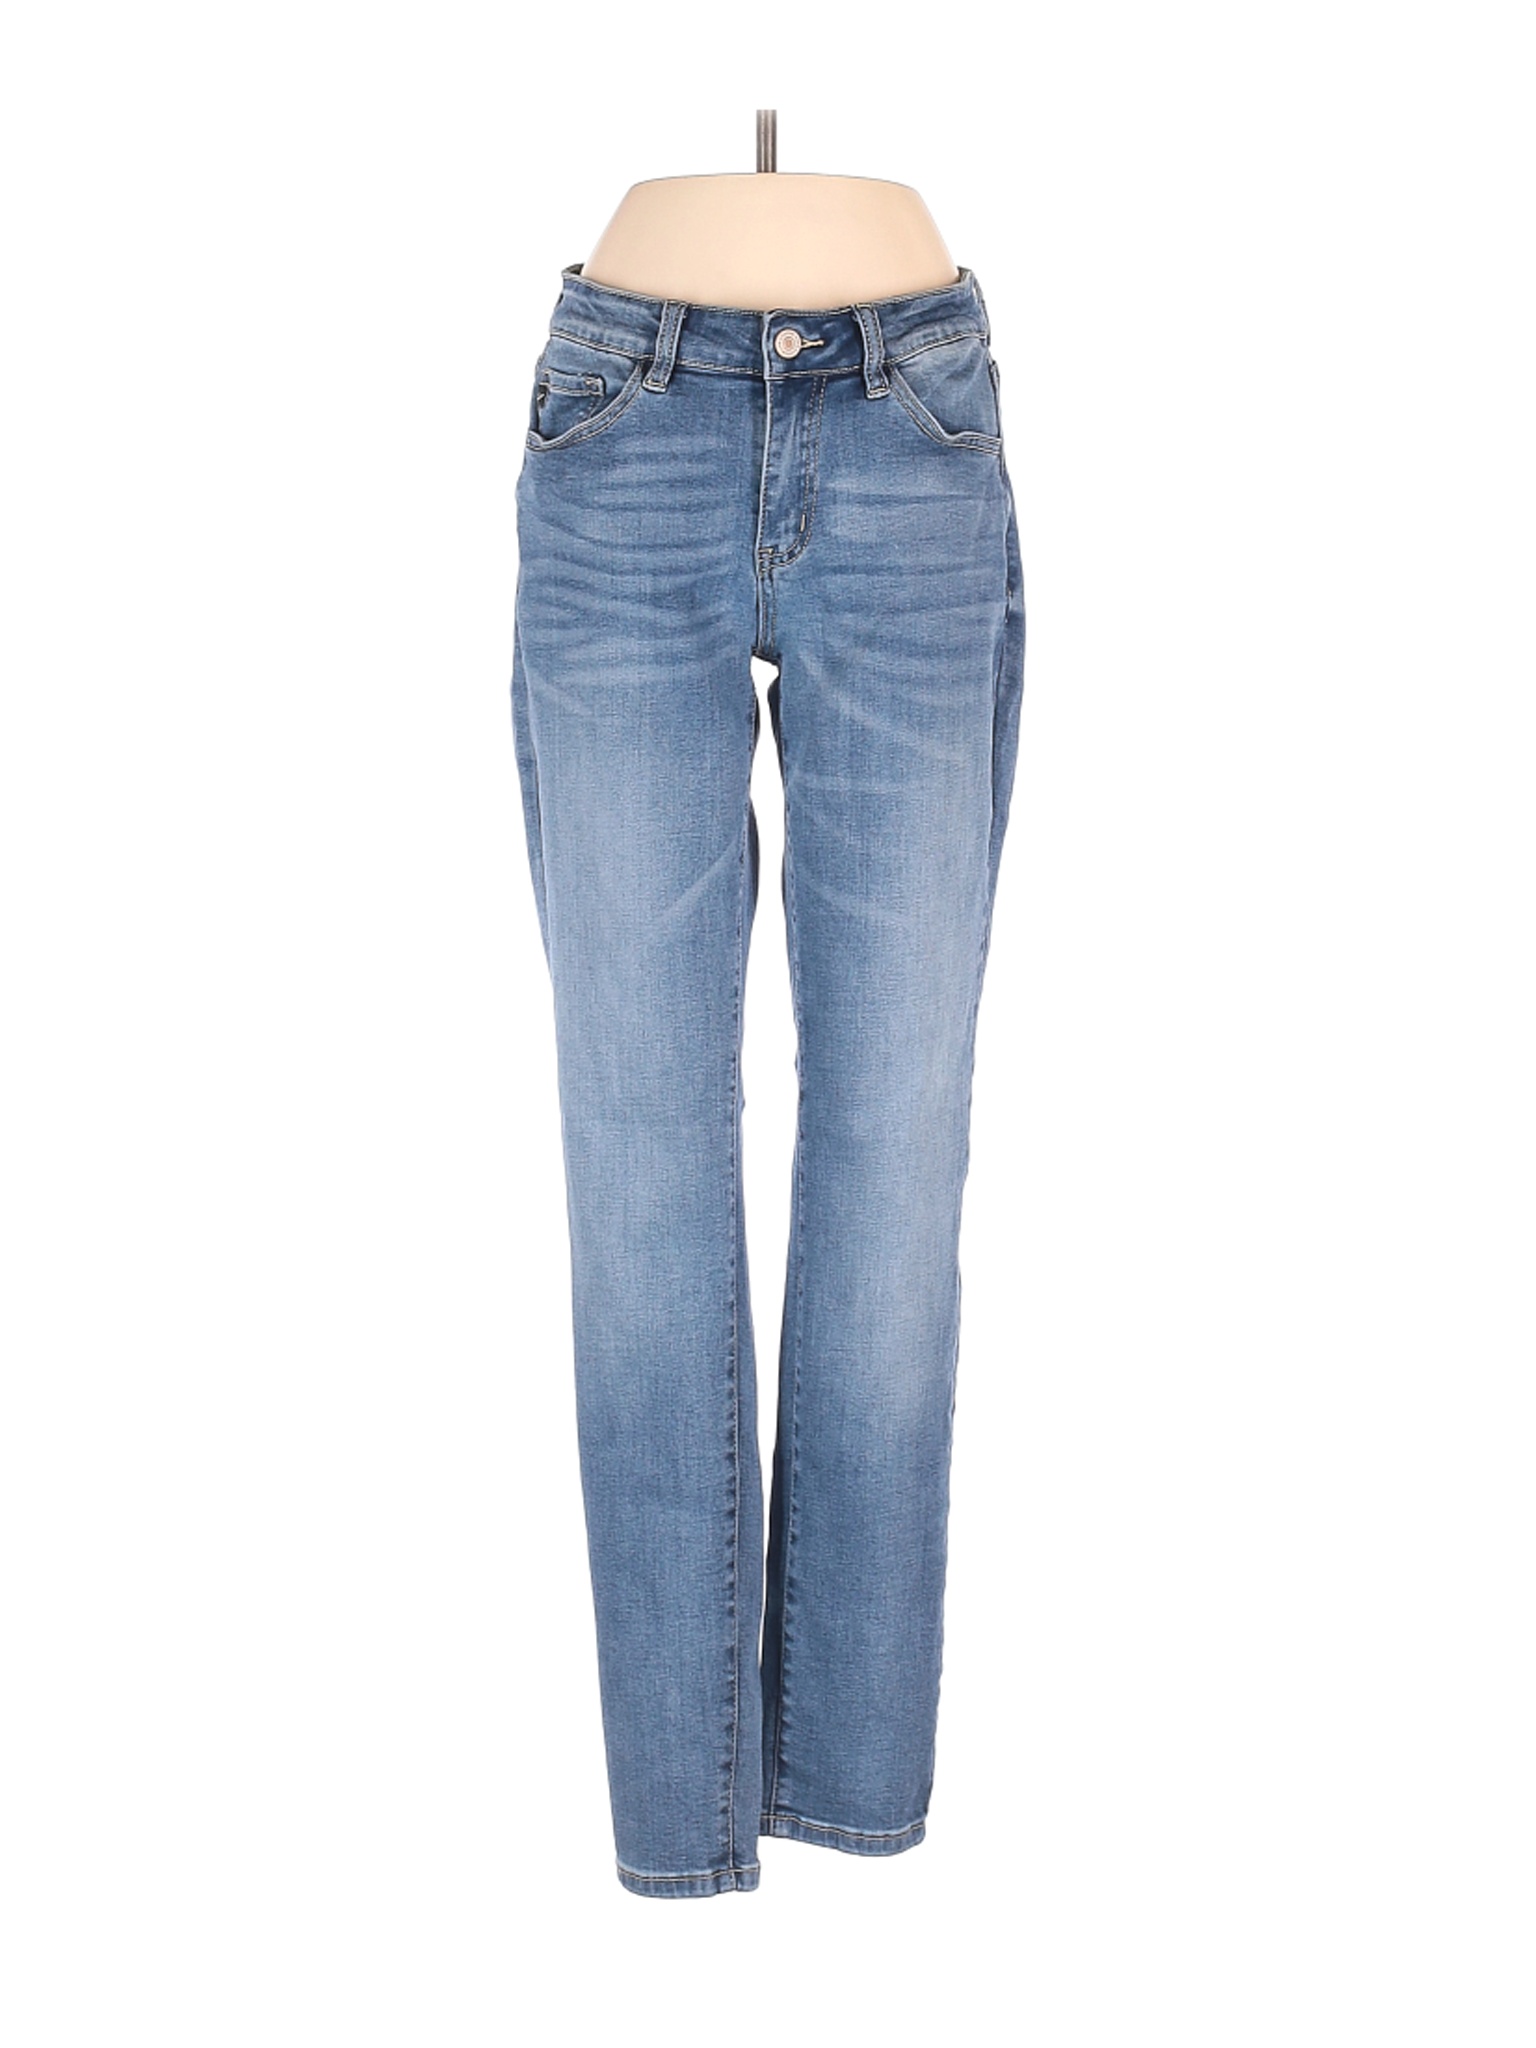 KANCAN JEANS Women Blue Jeans 27W | eBay